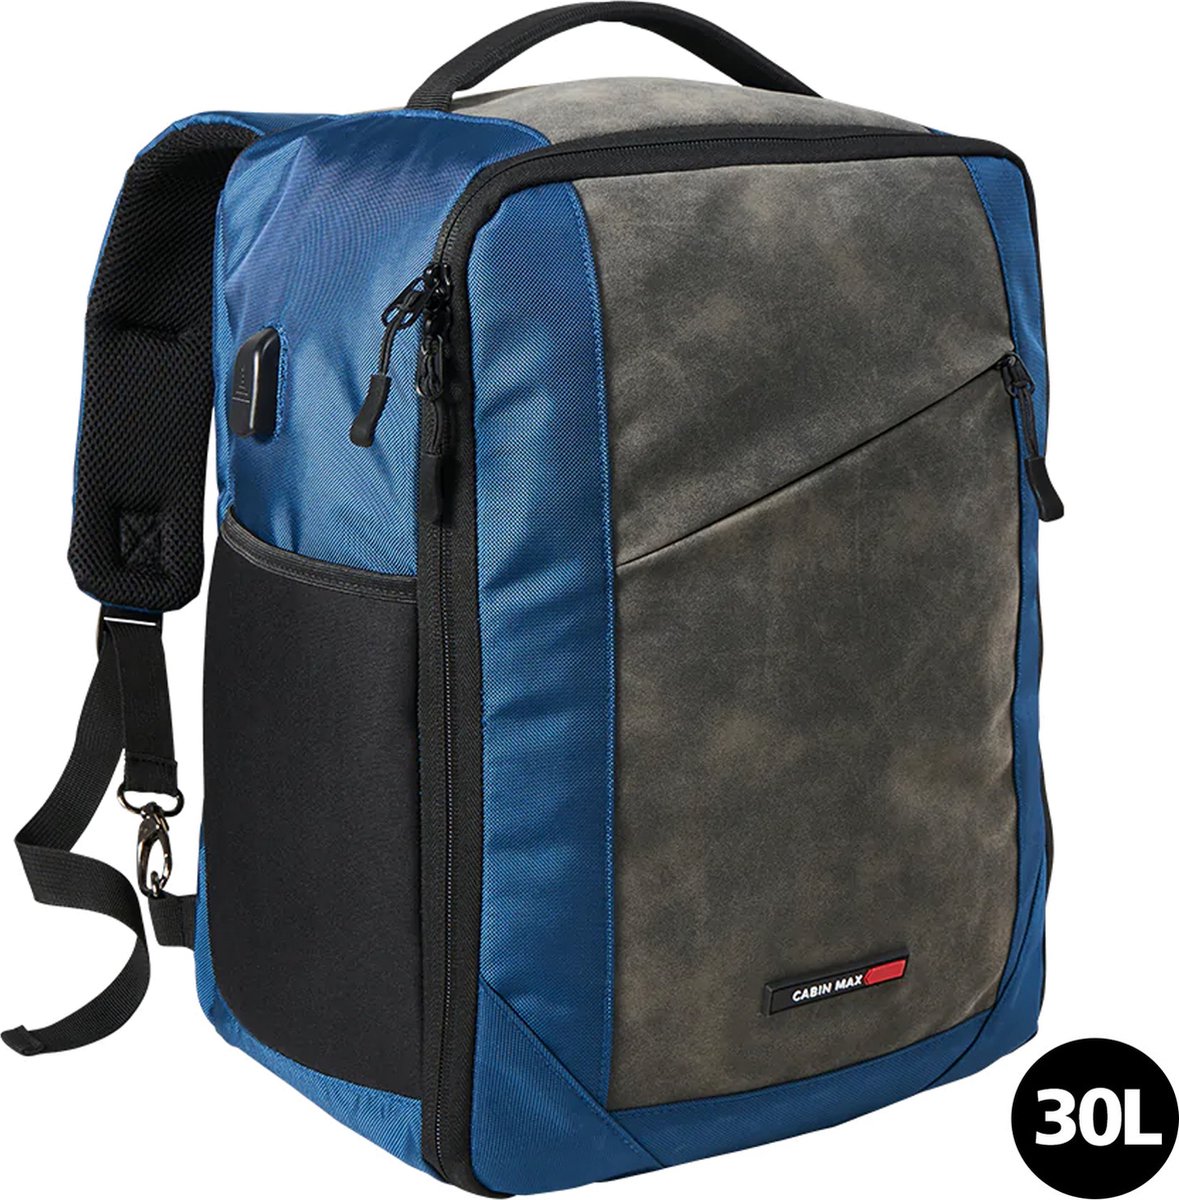 CabinMax Manhatten Reistas– Handbagage 30L Easyjet - Rugzak met USB poort – Backpack - 45x36x20cm – Lichtgewicht - Nettuno Blauw